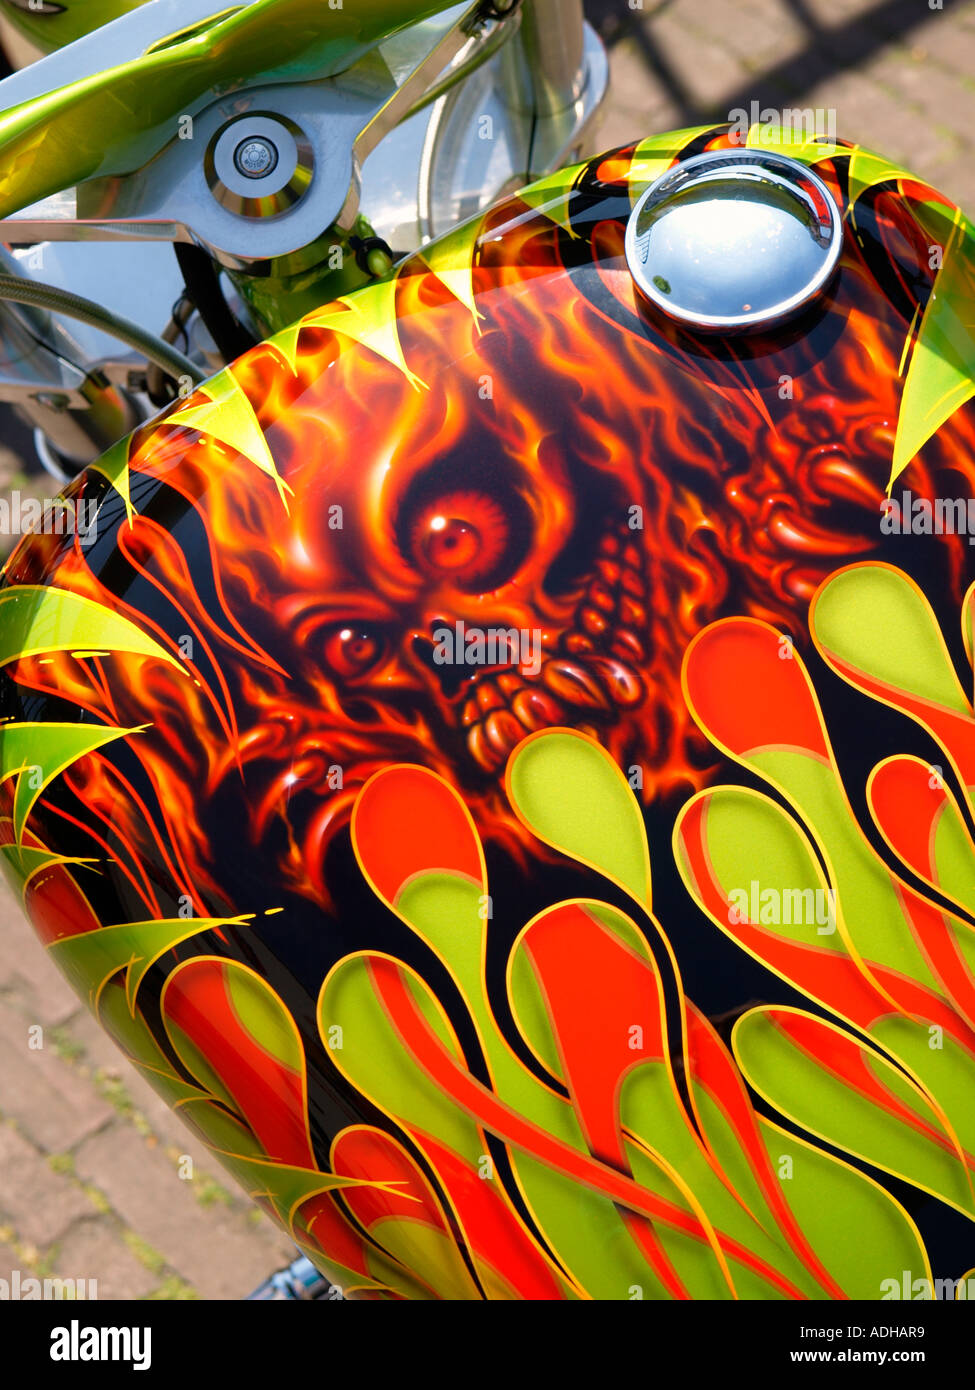 Gros plan du réservoir de carburant avec Harley Davidson airbrush spéciaux paintjob Breda Pays-Bas Banque D'Images